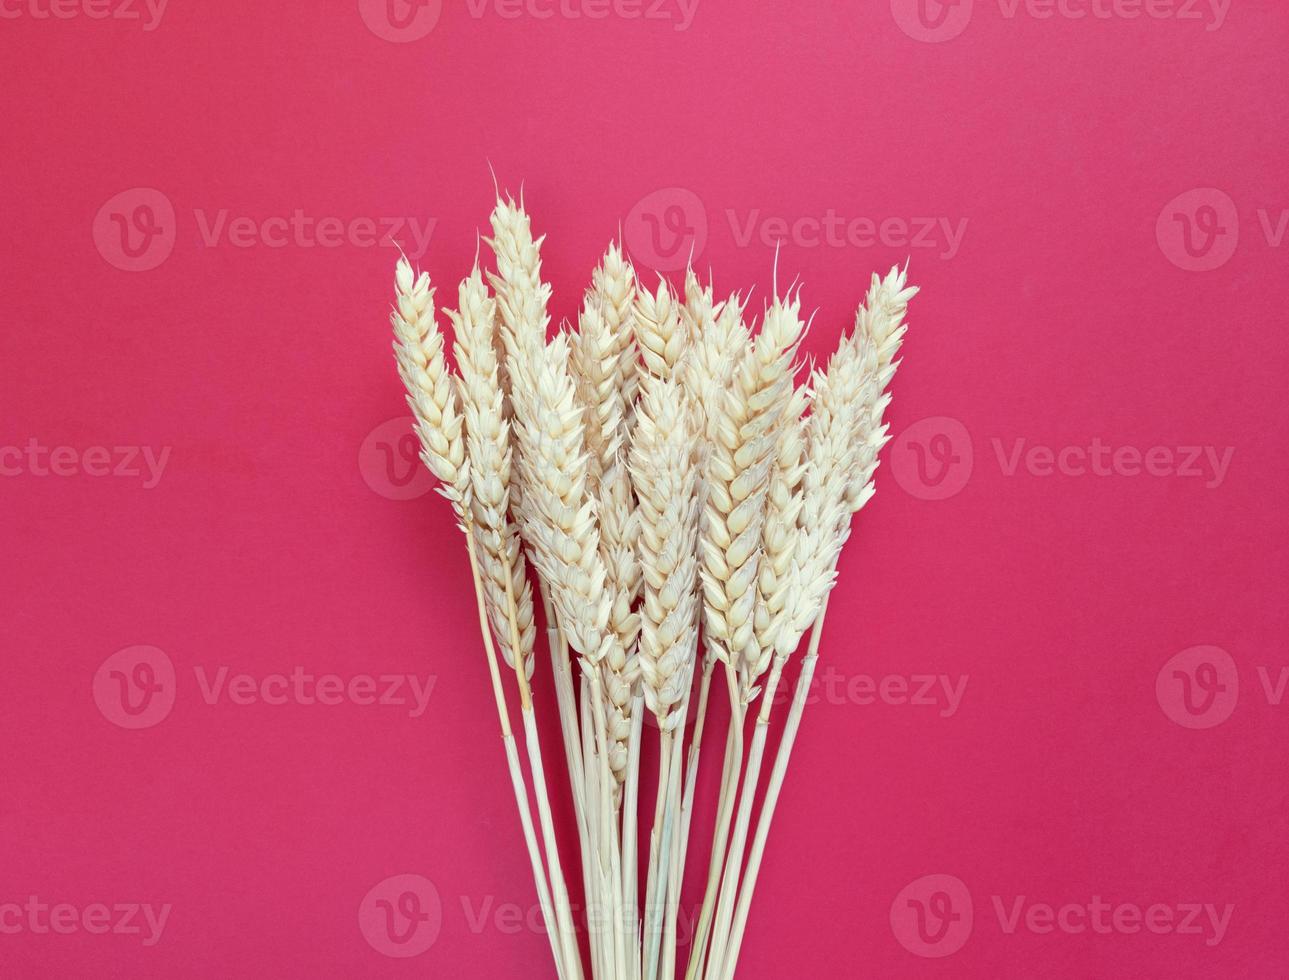 épillets de blé sur fond rouge. simple mise à plat avec espace de copie. stock photo. photo